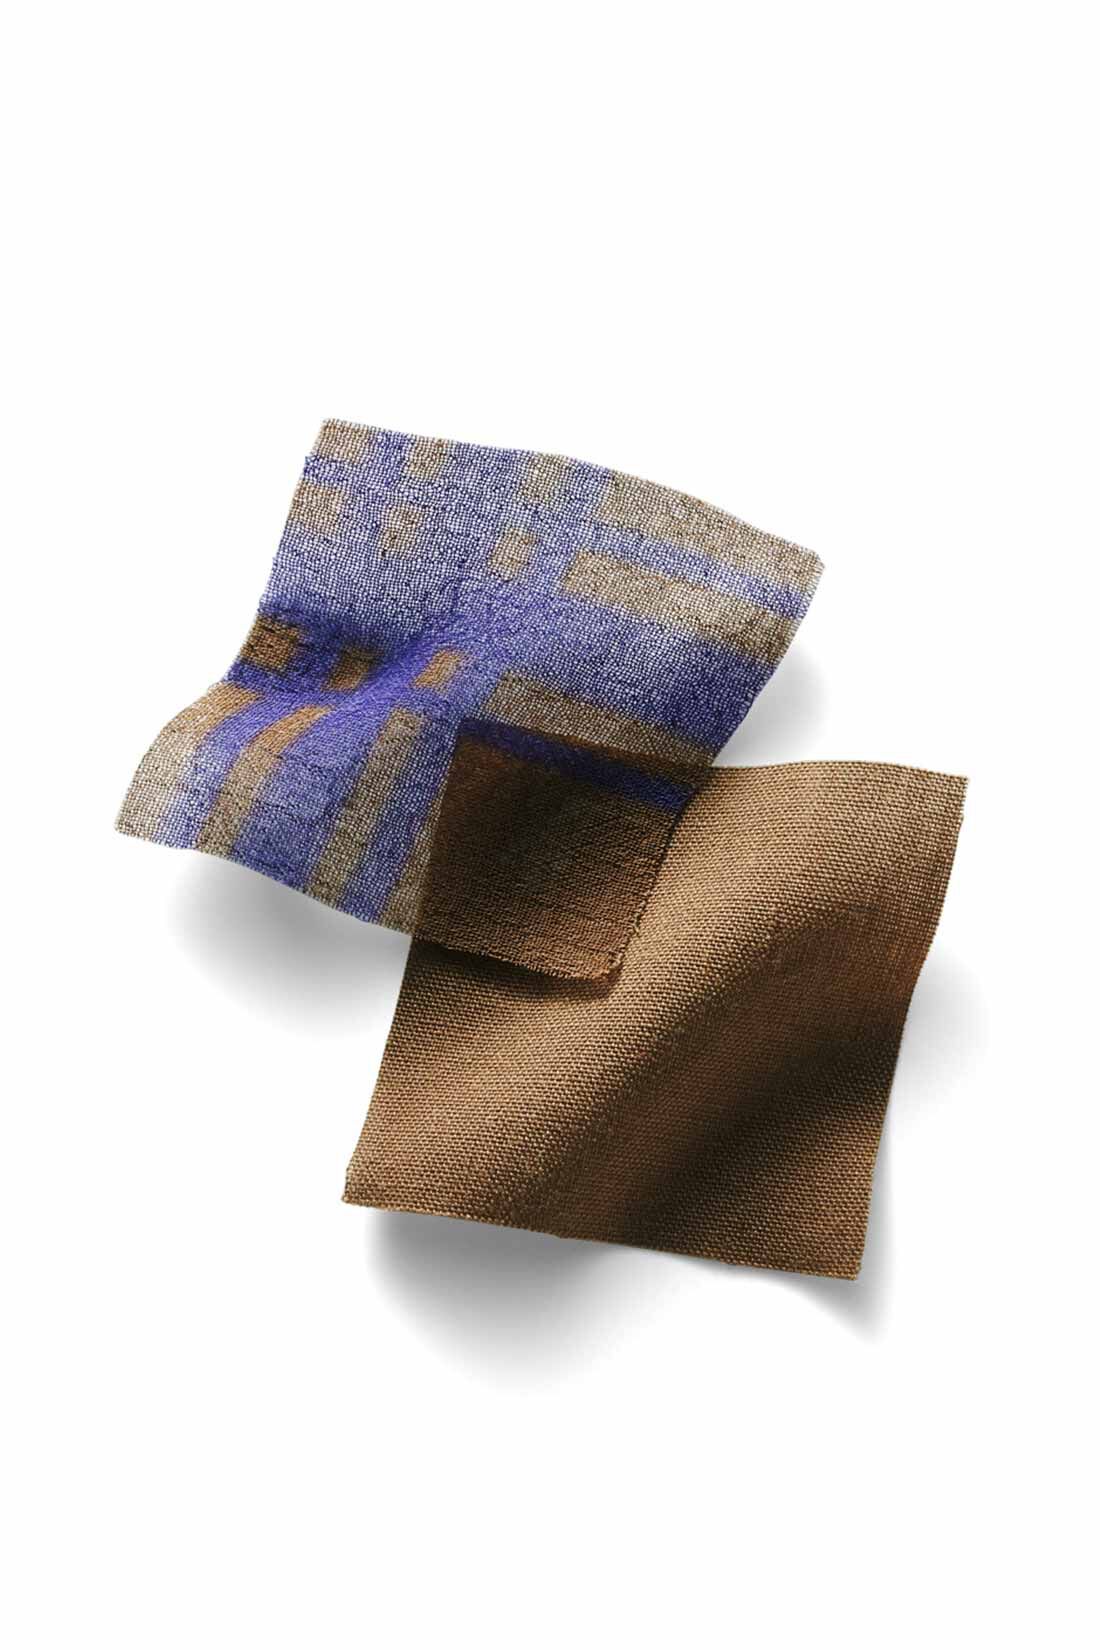 Real Stock|IEDIT[イディット]　楊柳（ようりゅう）シフォン素材が涼やかな 大人チェック柄ロングスカート〈カーキブラウン〉|表地はほのかな透け感のある軽やかな楊柳シフォン。裏地はコットンタッチの布はく素材でさらっと快適。